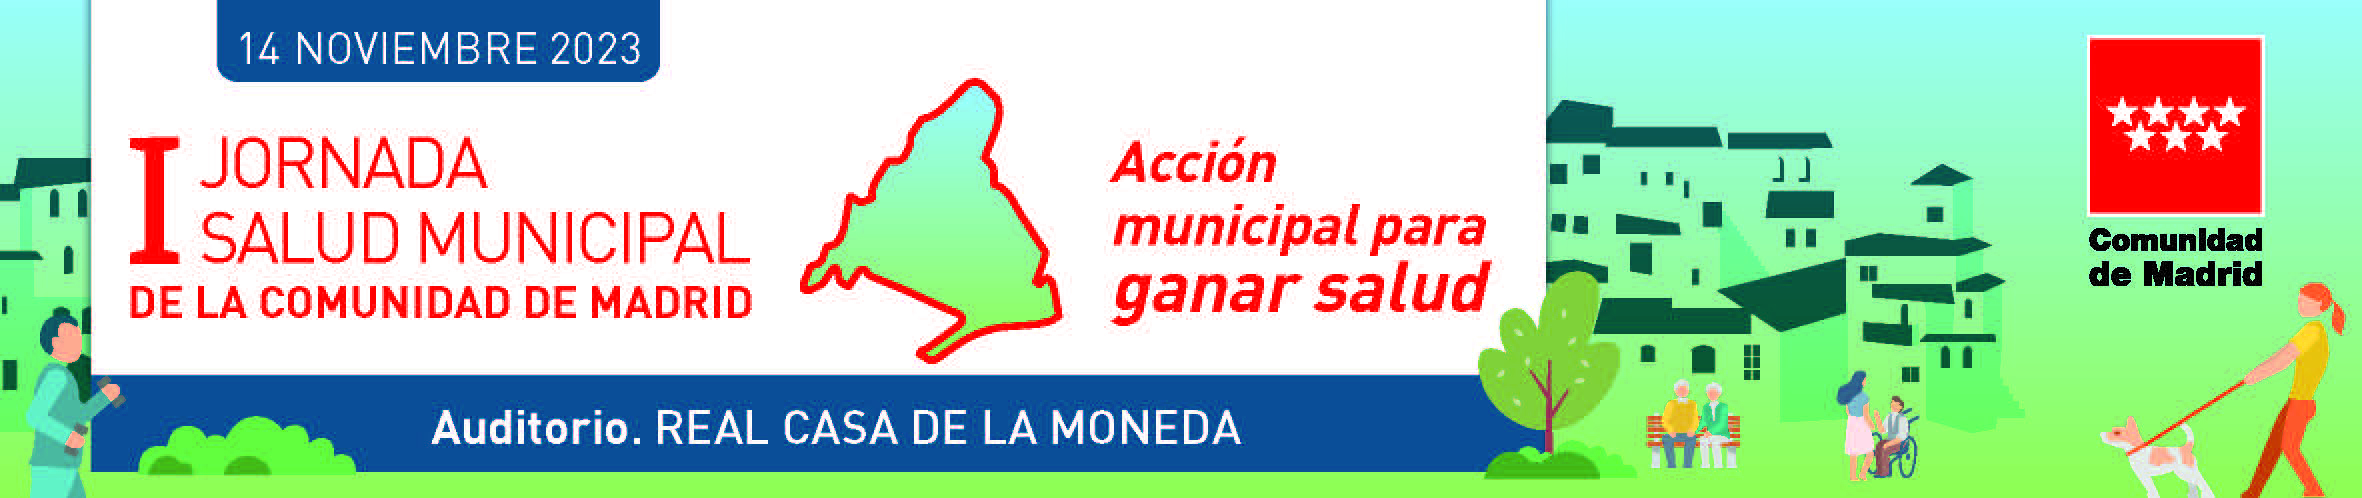 Anuncio Primera jornada salud municipal comunidad de madrid